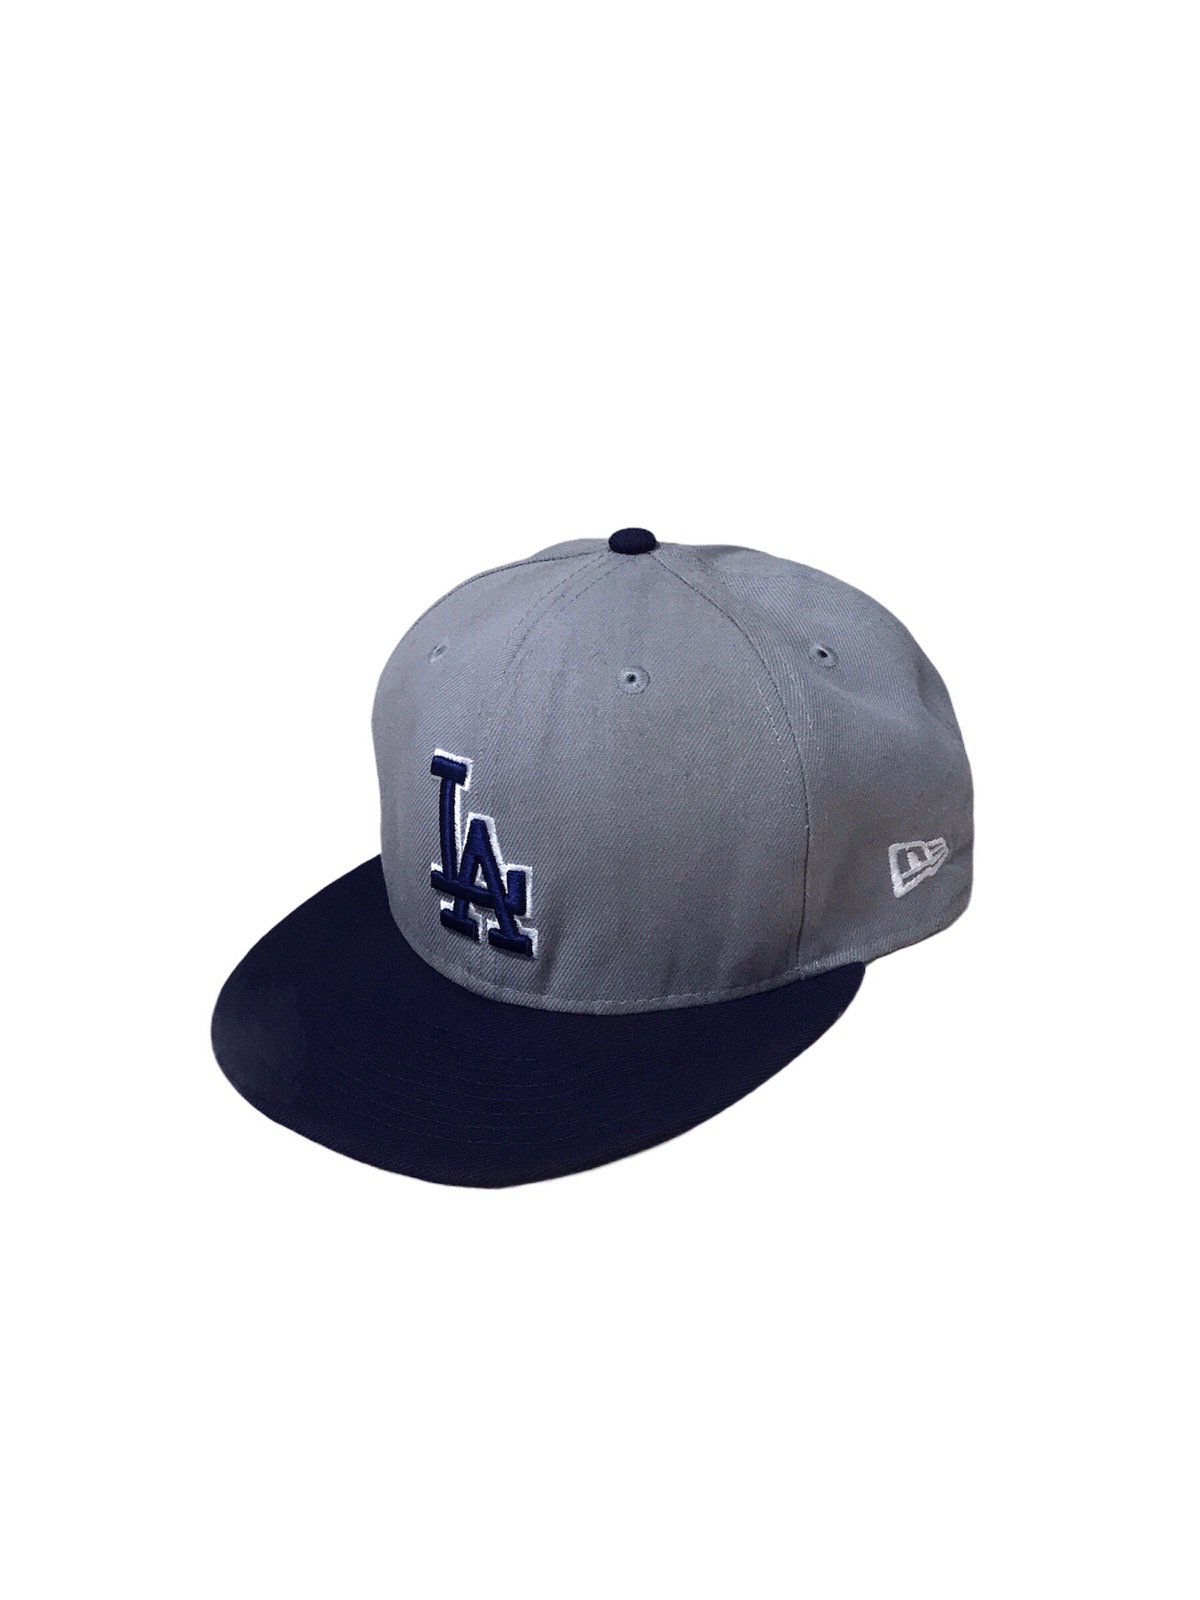 MLB - Vintage LA Dodgers Snapback MLB New Era Cap Hat - 2